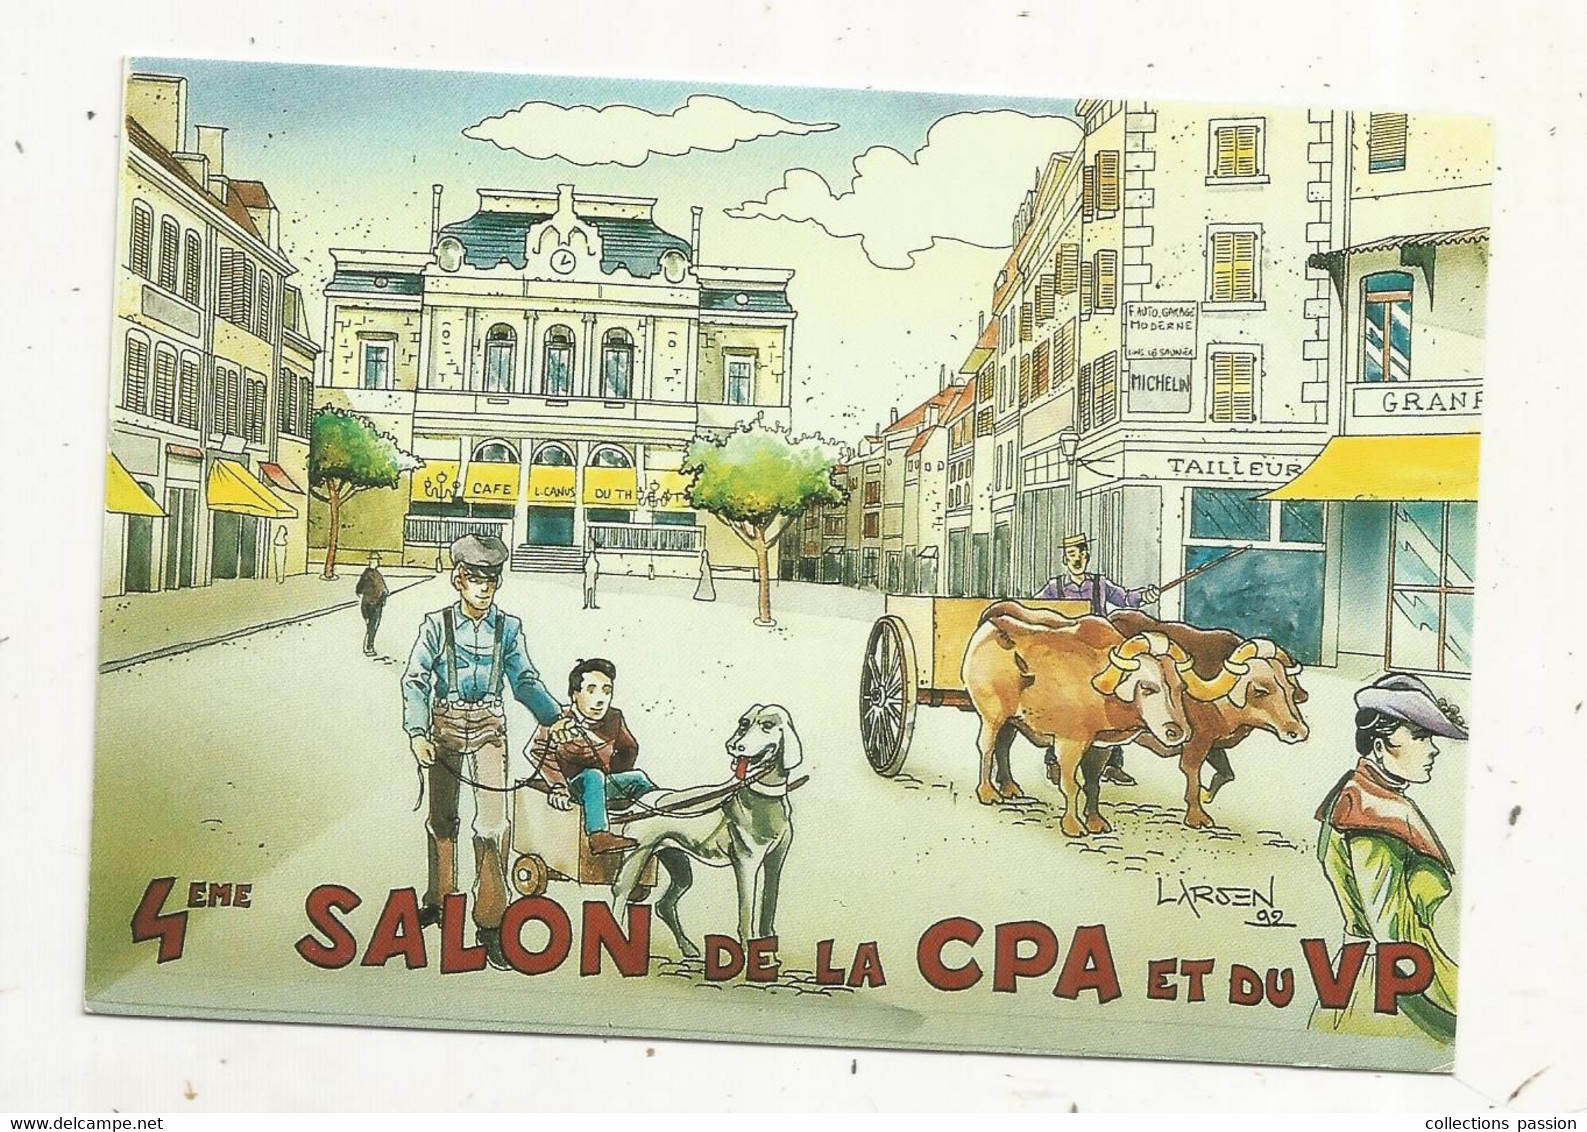 Cp, Bourses & Salons De Collections, 4 E SALON DE LA  CPA ET DU VP, Lons Le Saunier,1993, Illustrateur: LARSEN, Vierge - Beursen Voor Verzamellars